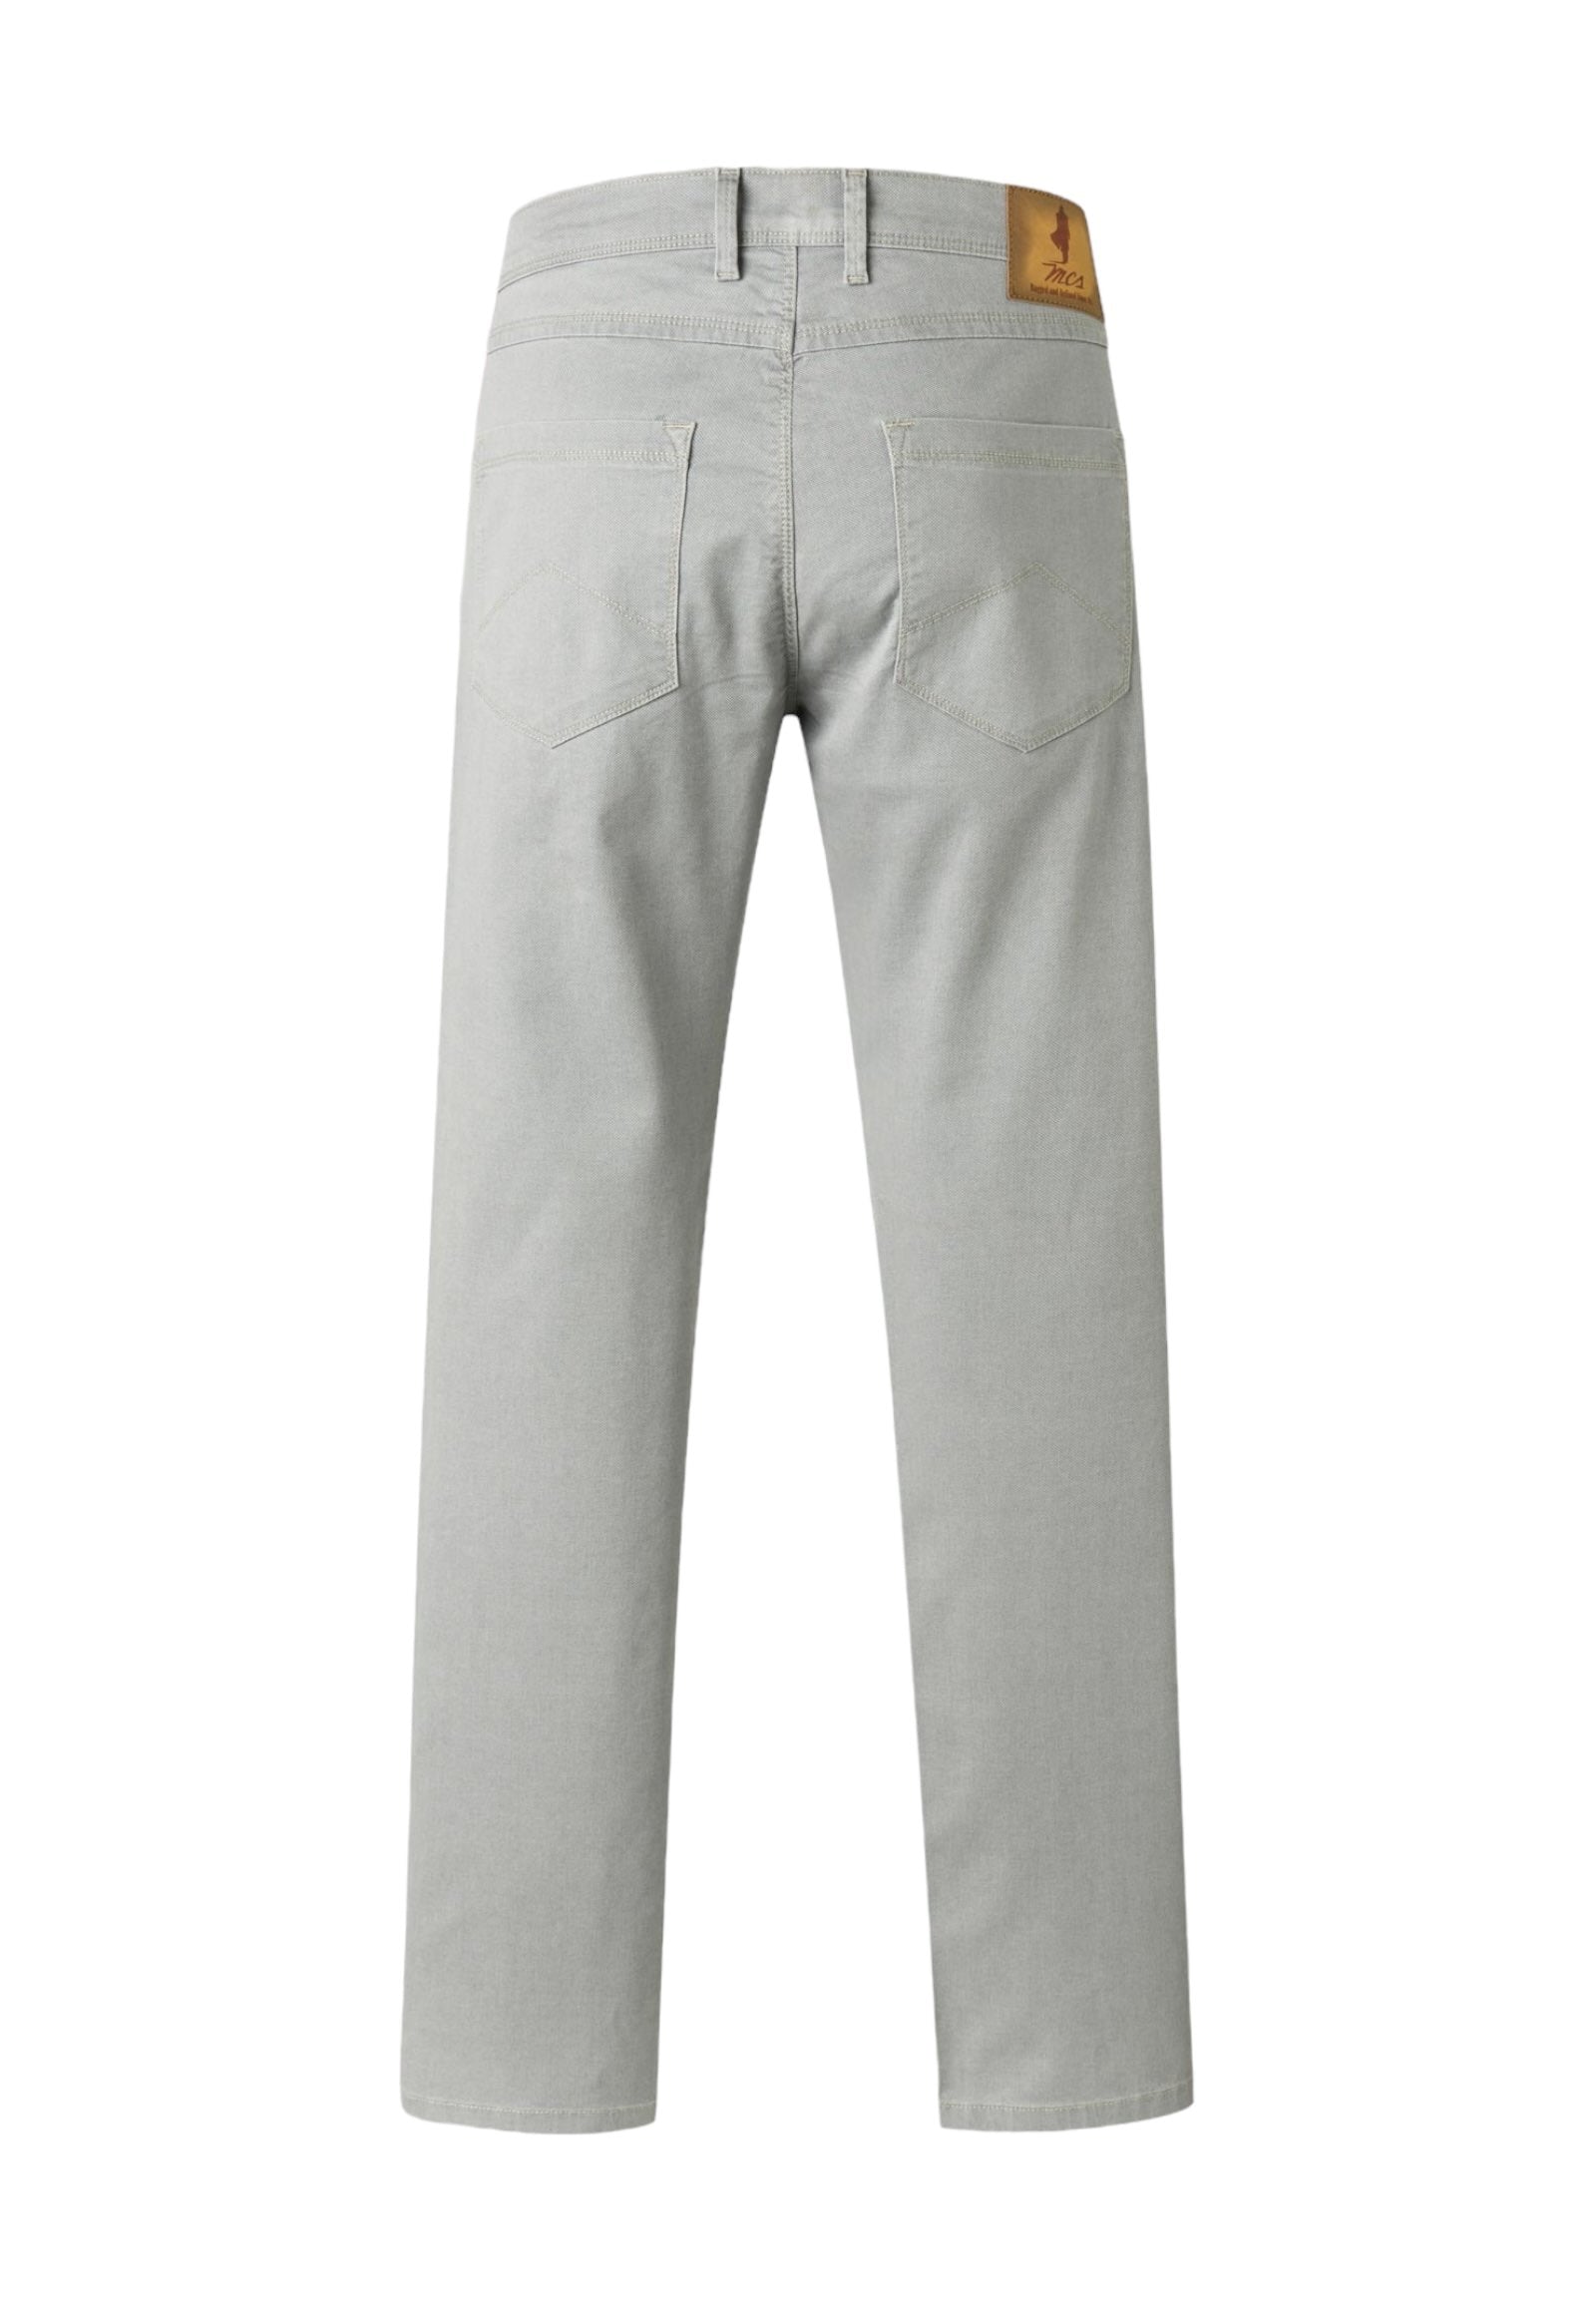 Mcs Pantaloni 10m5p101-02104 Mid, Grey